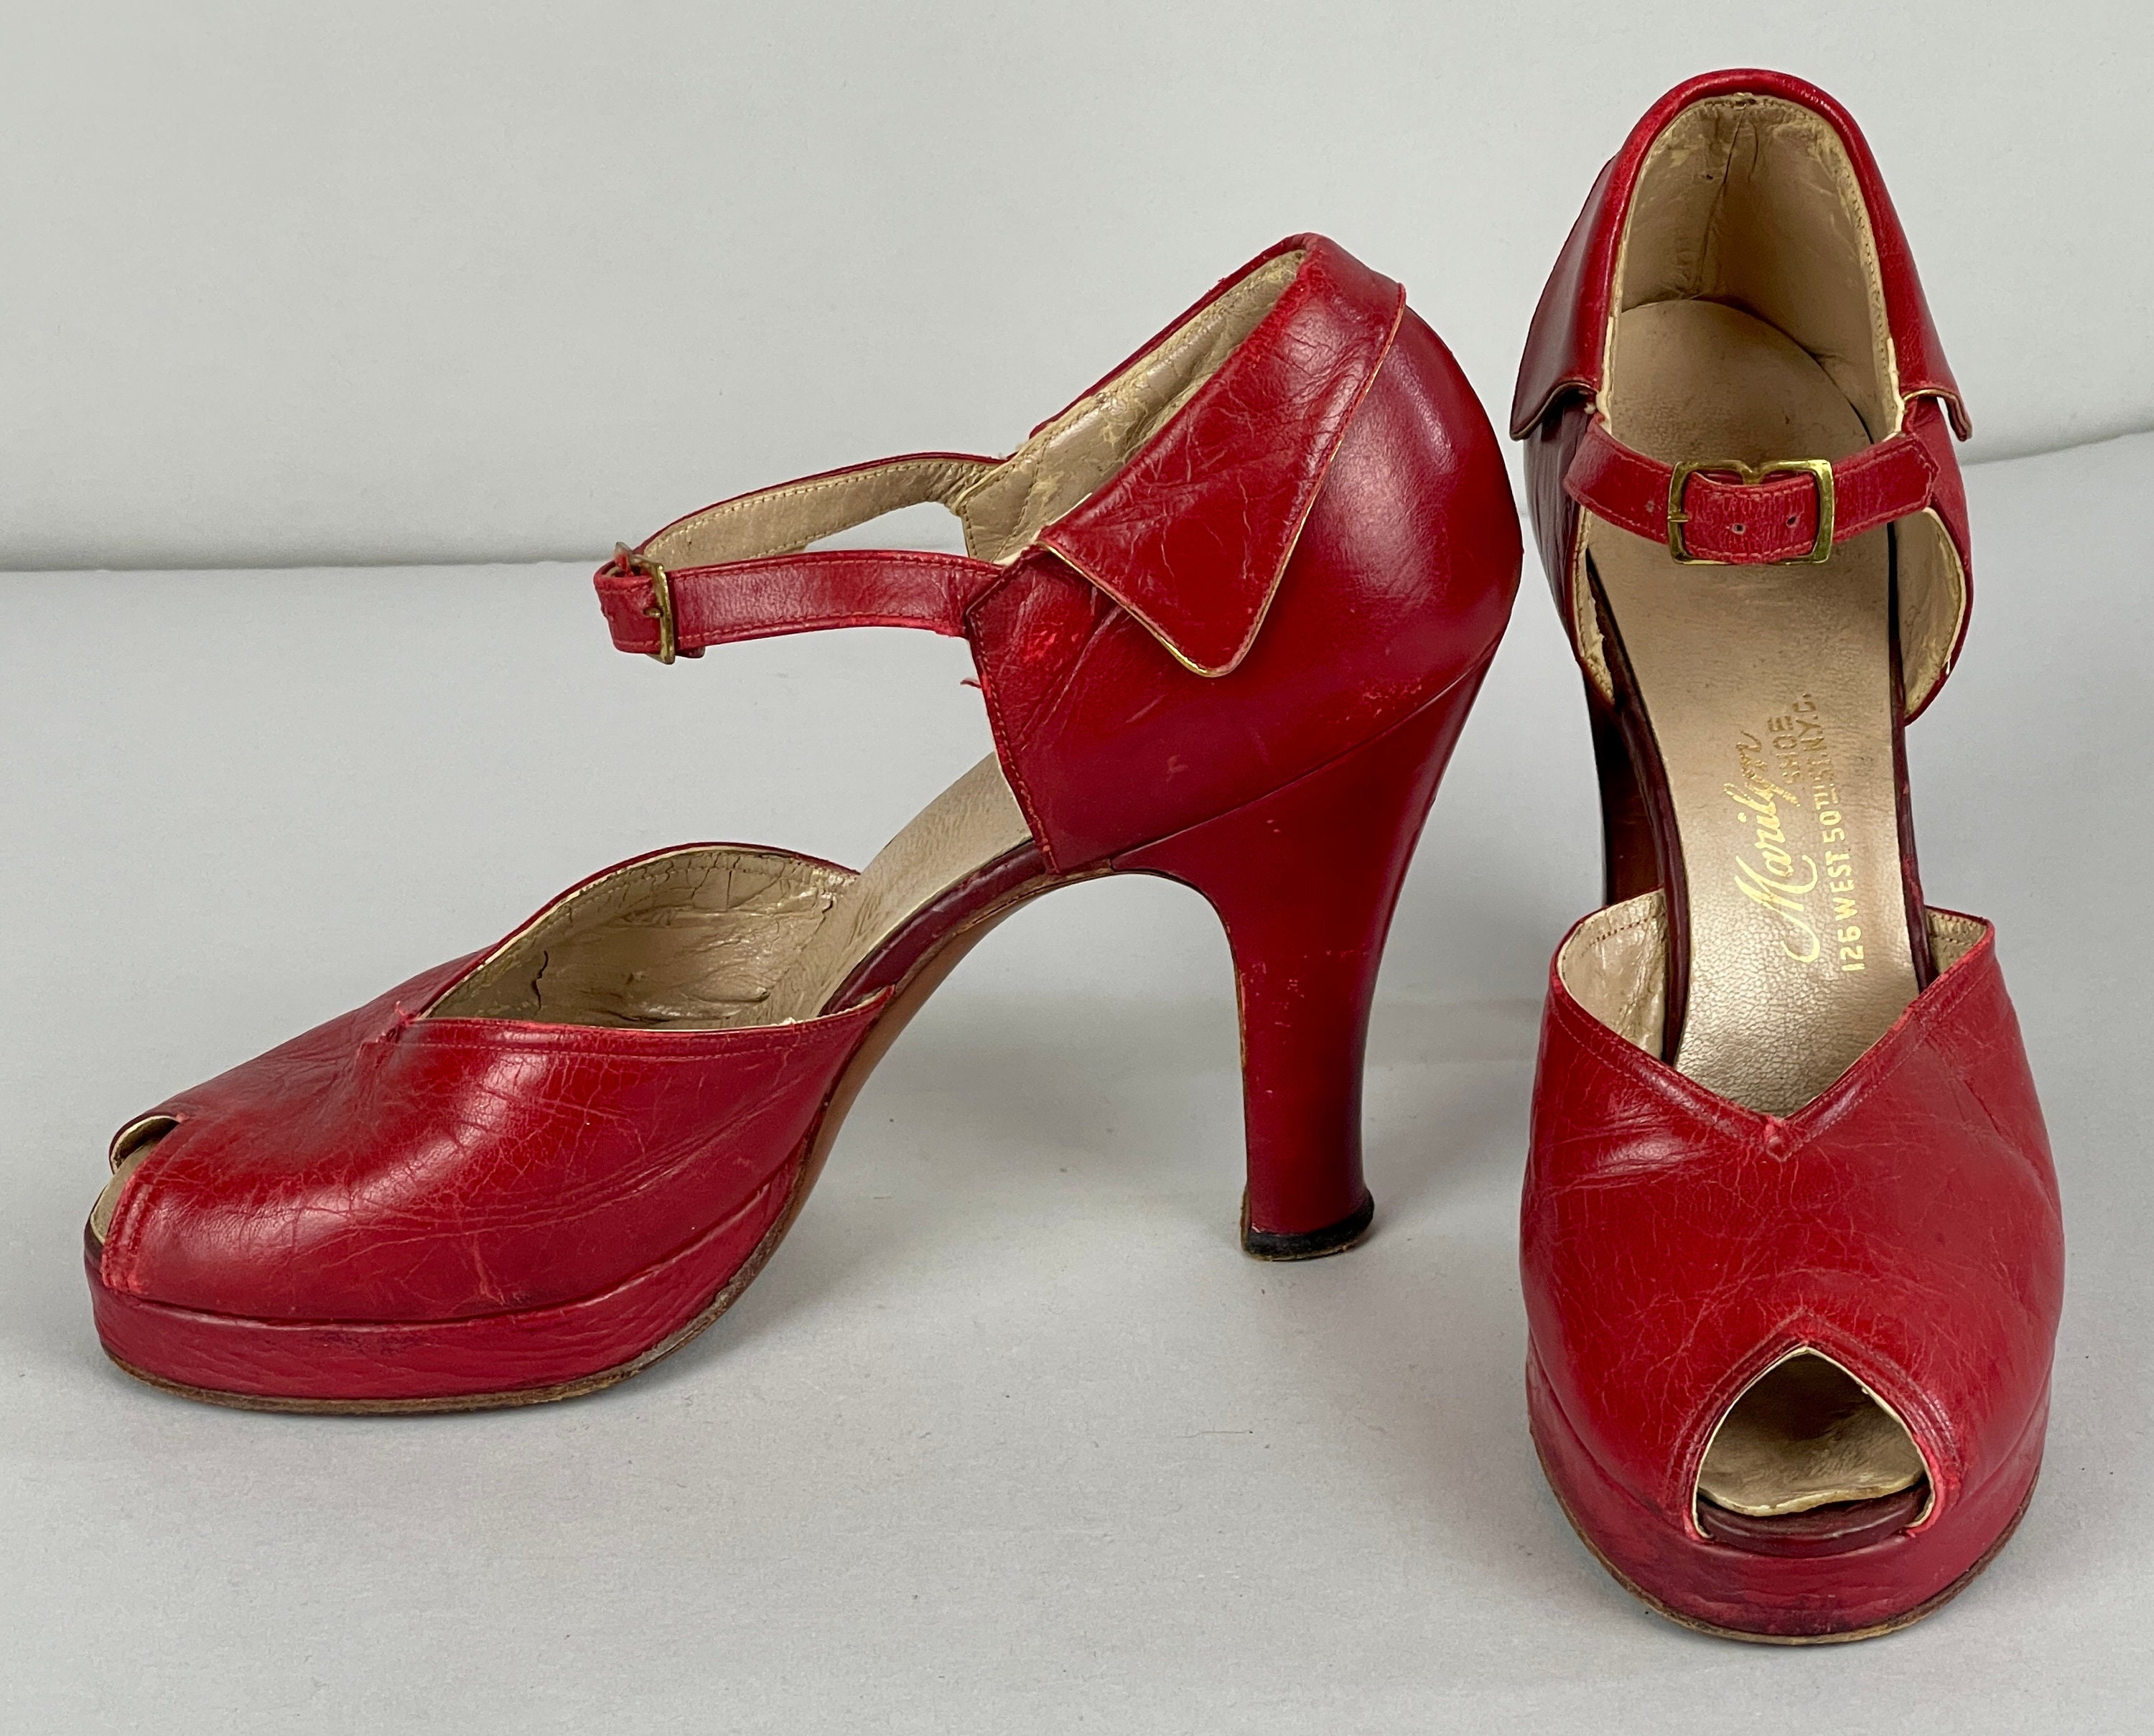 Schoenen damesschoenen Pumps Maat US 6.5 Jaren 1940 Carmen Miranda Cha Cha Platforms Vintage 40s Crimson Red Leather Mary Jane Peeptoe Schoenen met hoge hakken van "Marilyn" 